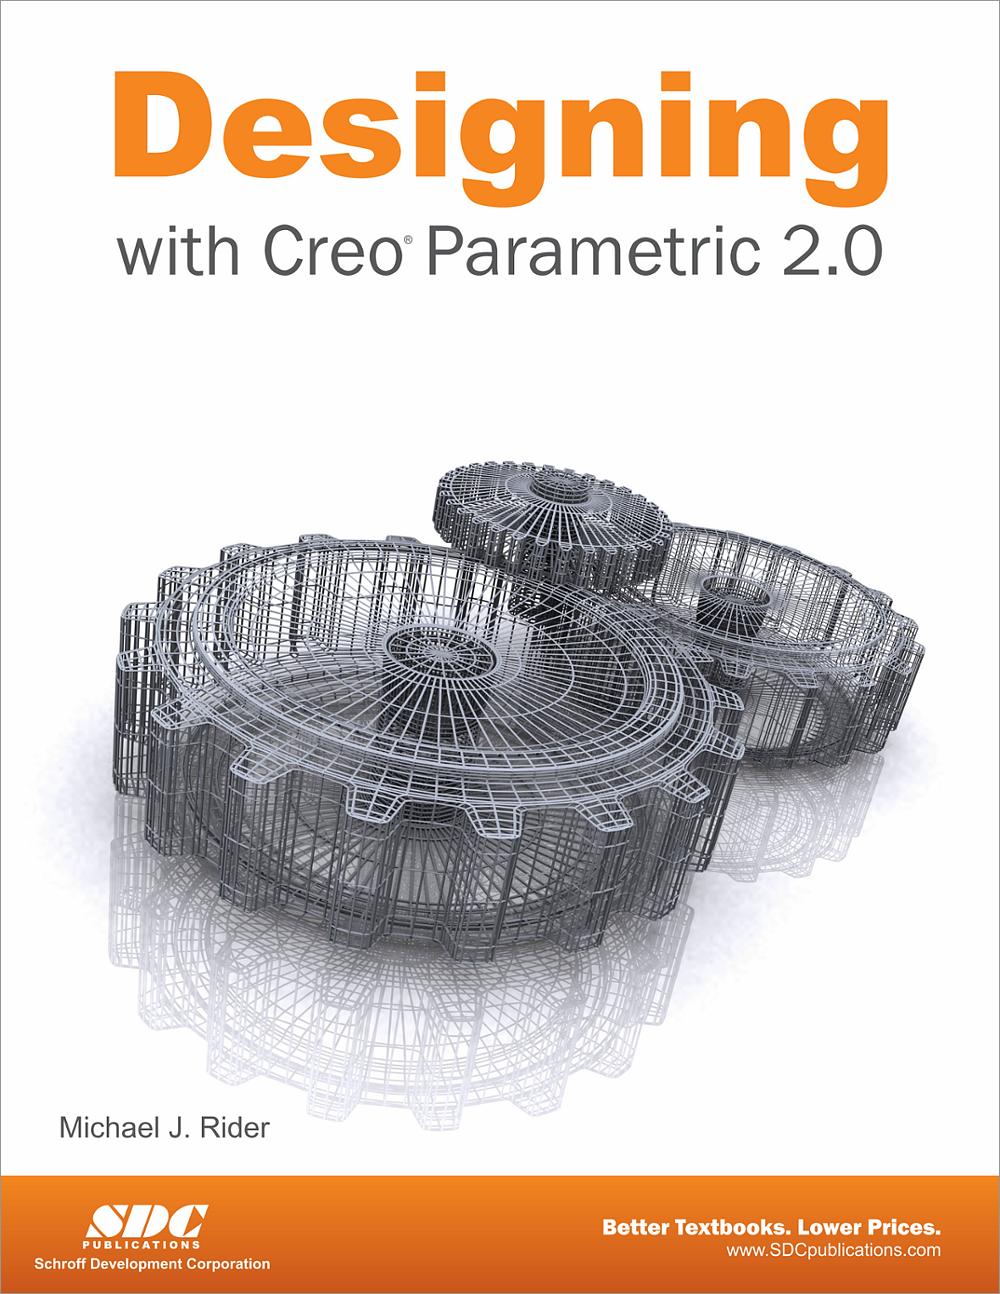 download creo parametric 5.0 full crack